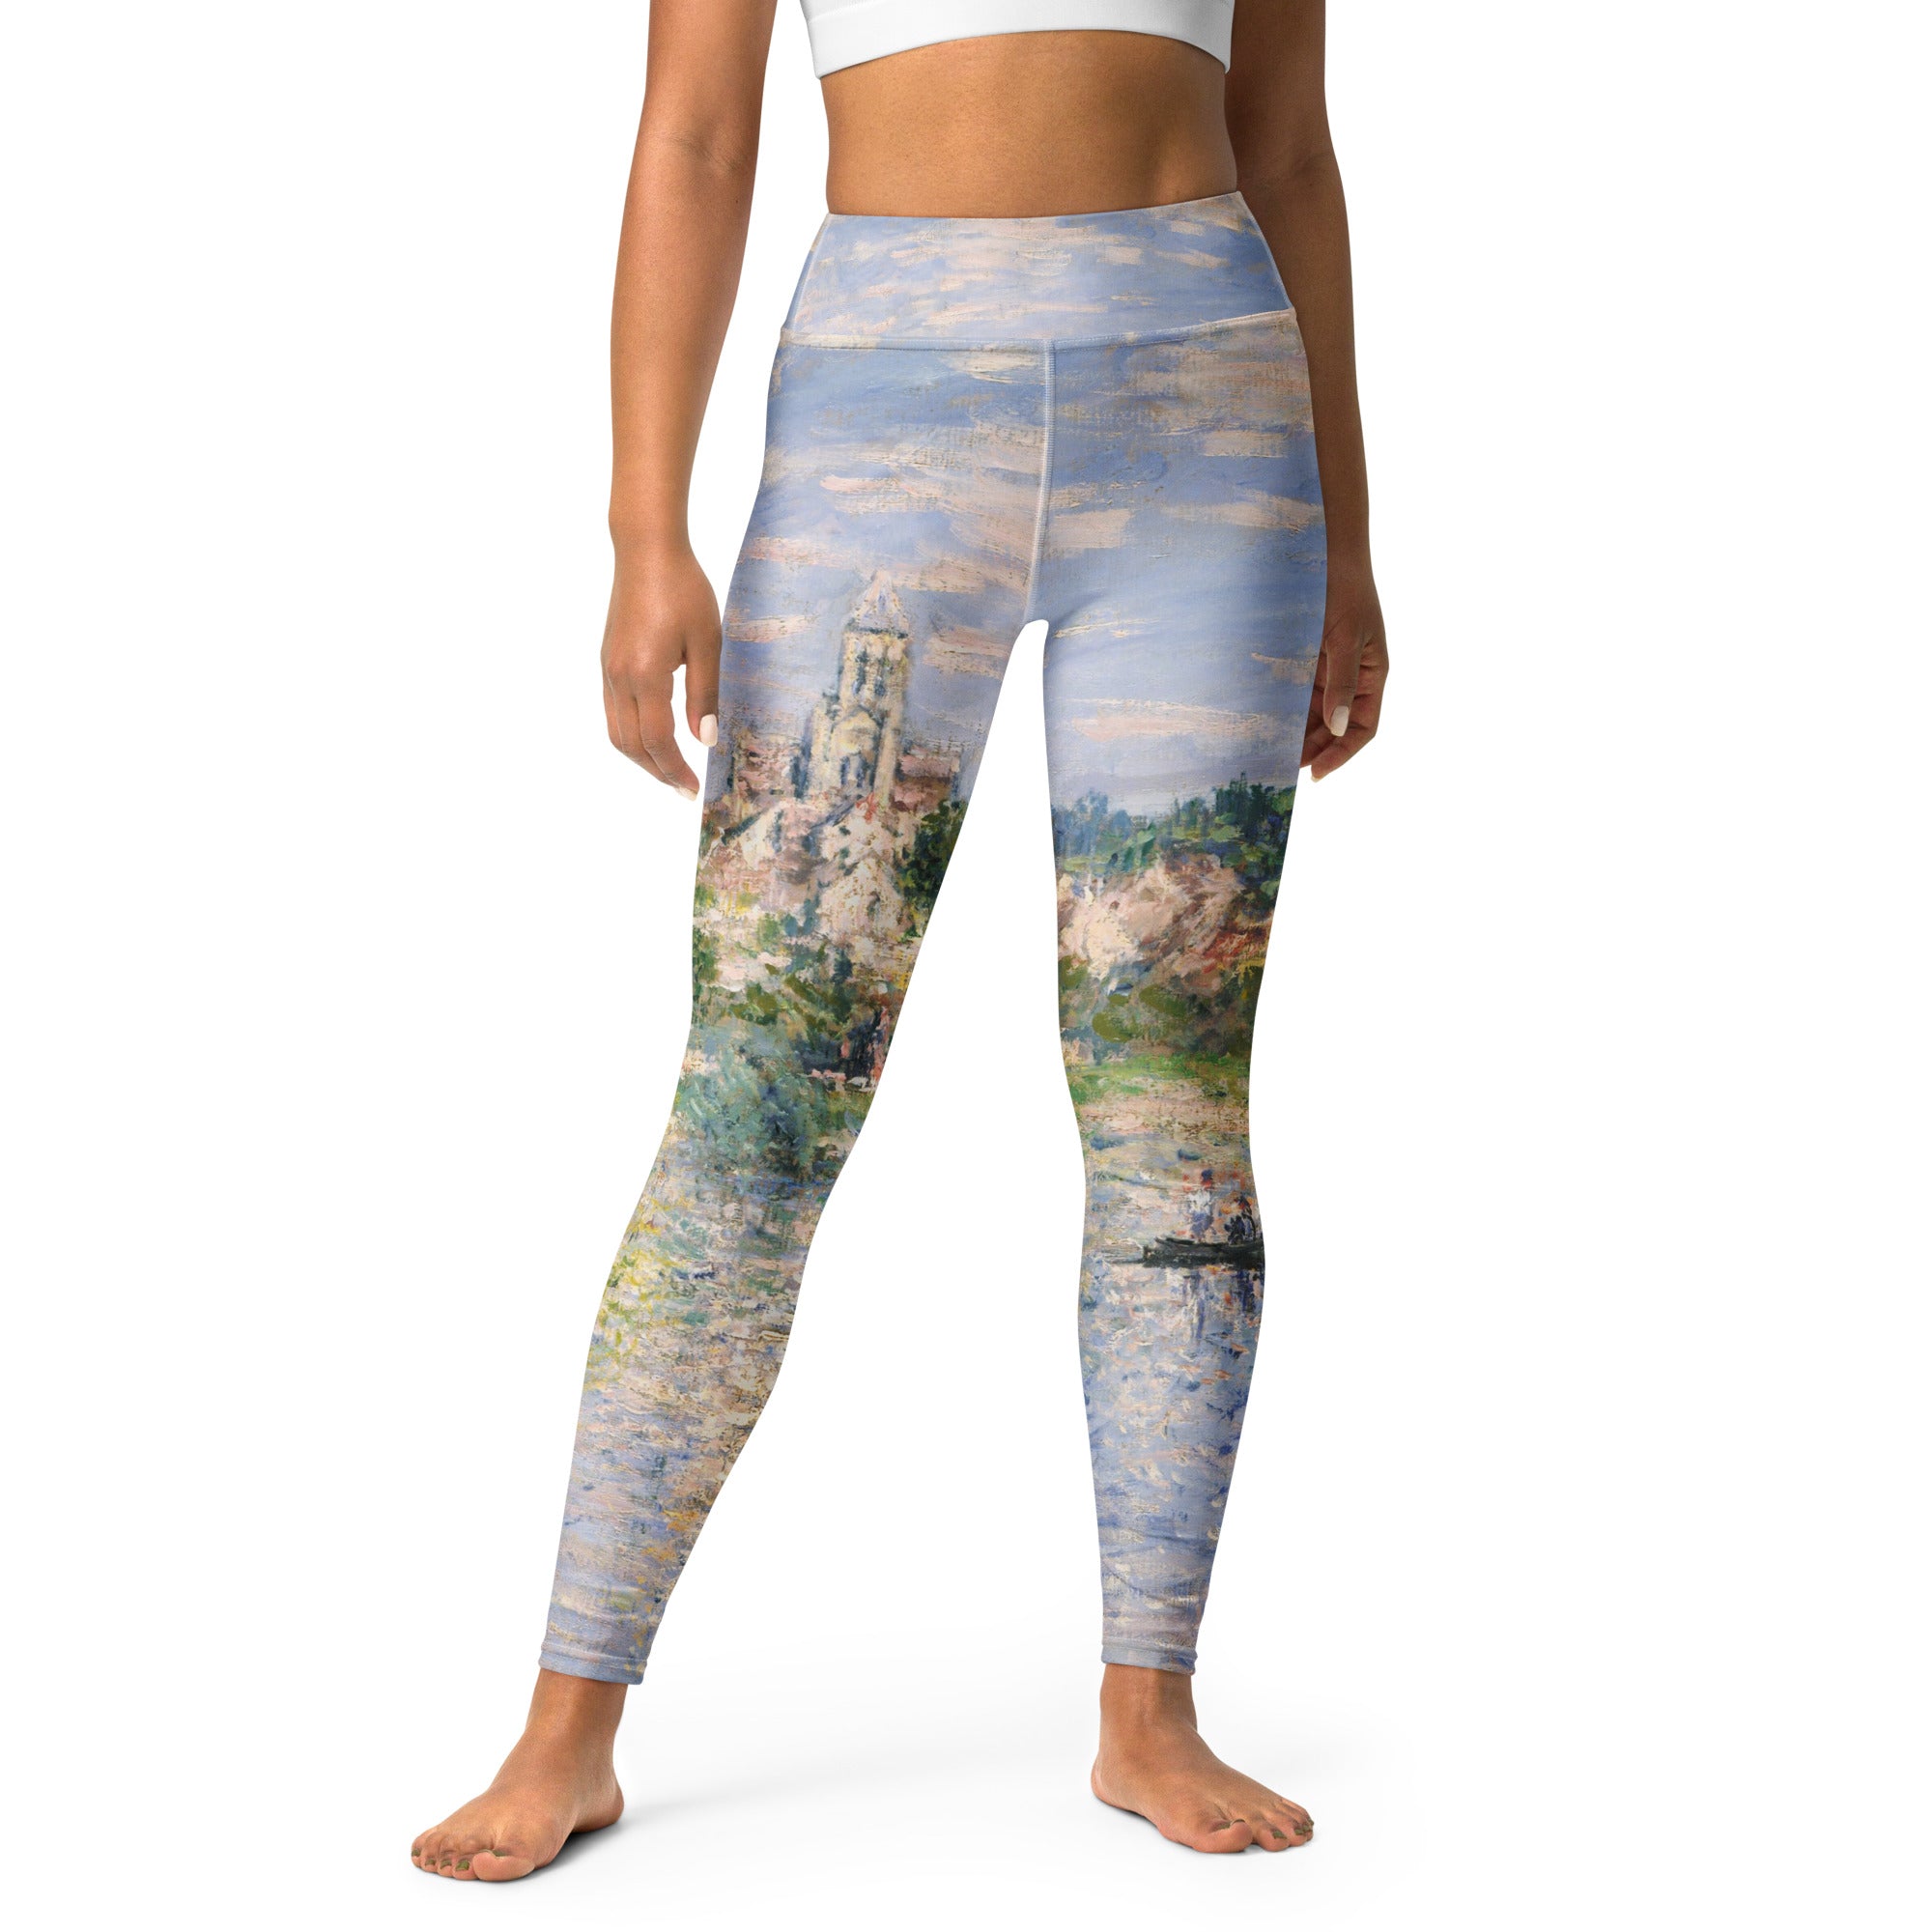 Claude Monet 'Vetheuil im Sommer' Berühmtes Gemälde Yoga Leggings | Premium Art Yoga Leggings